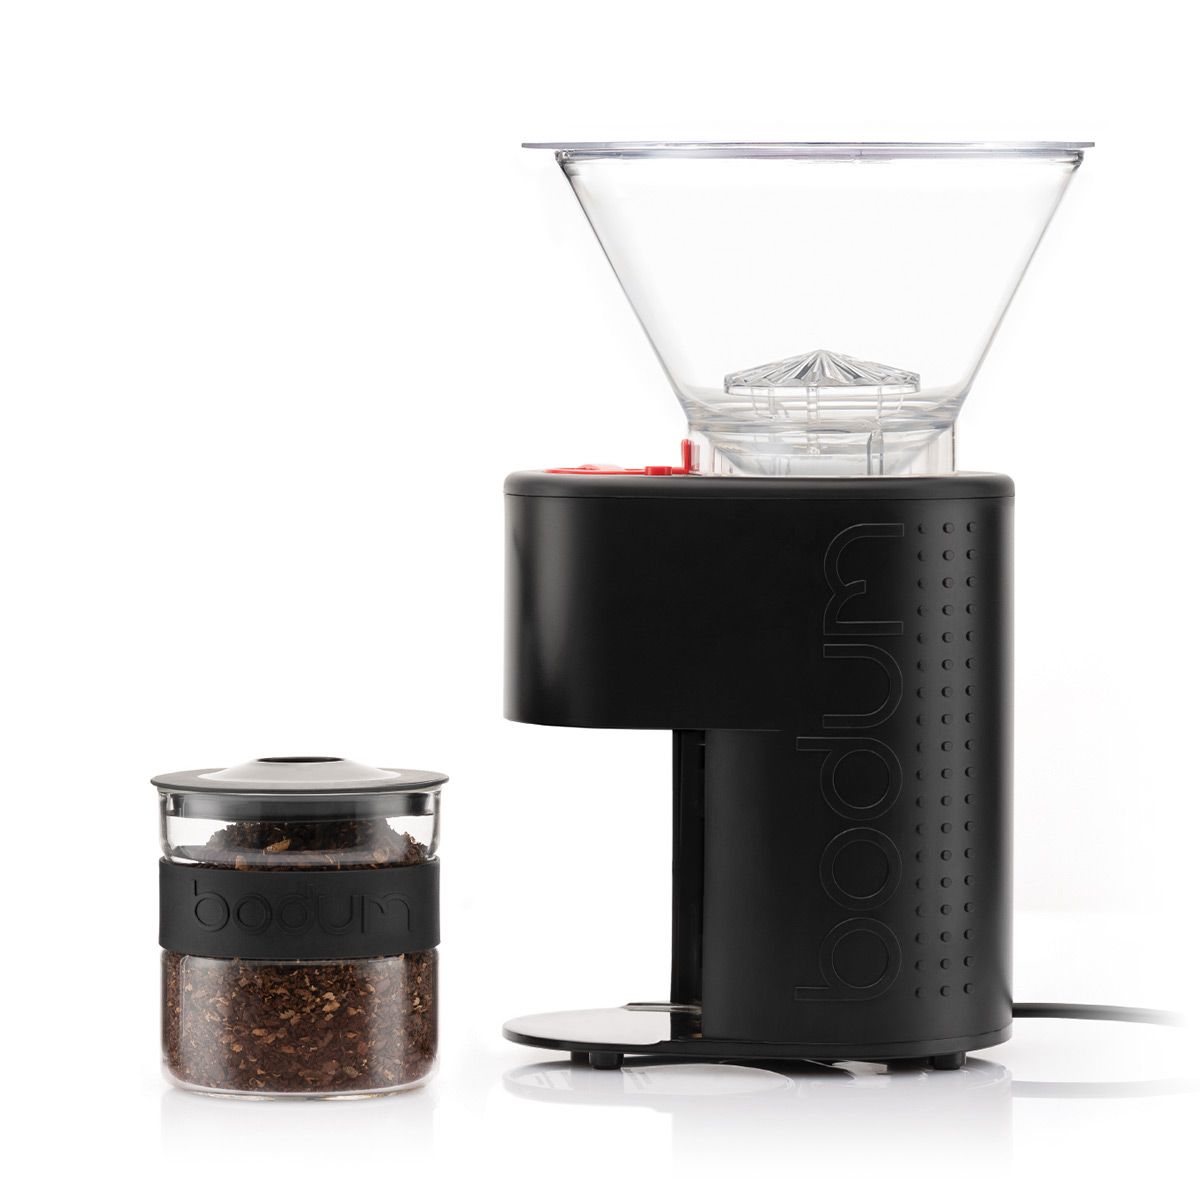 Bodum Bistro elektrische koffiemolen met conische grinder, zwart